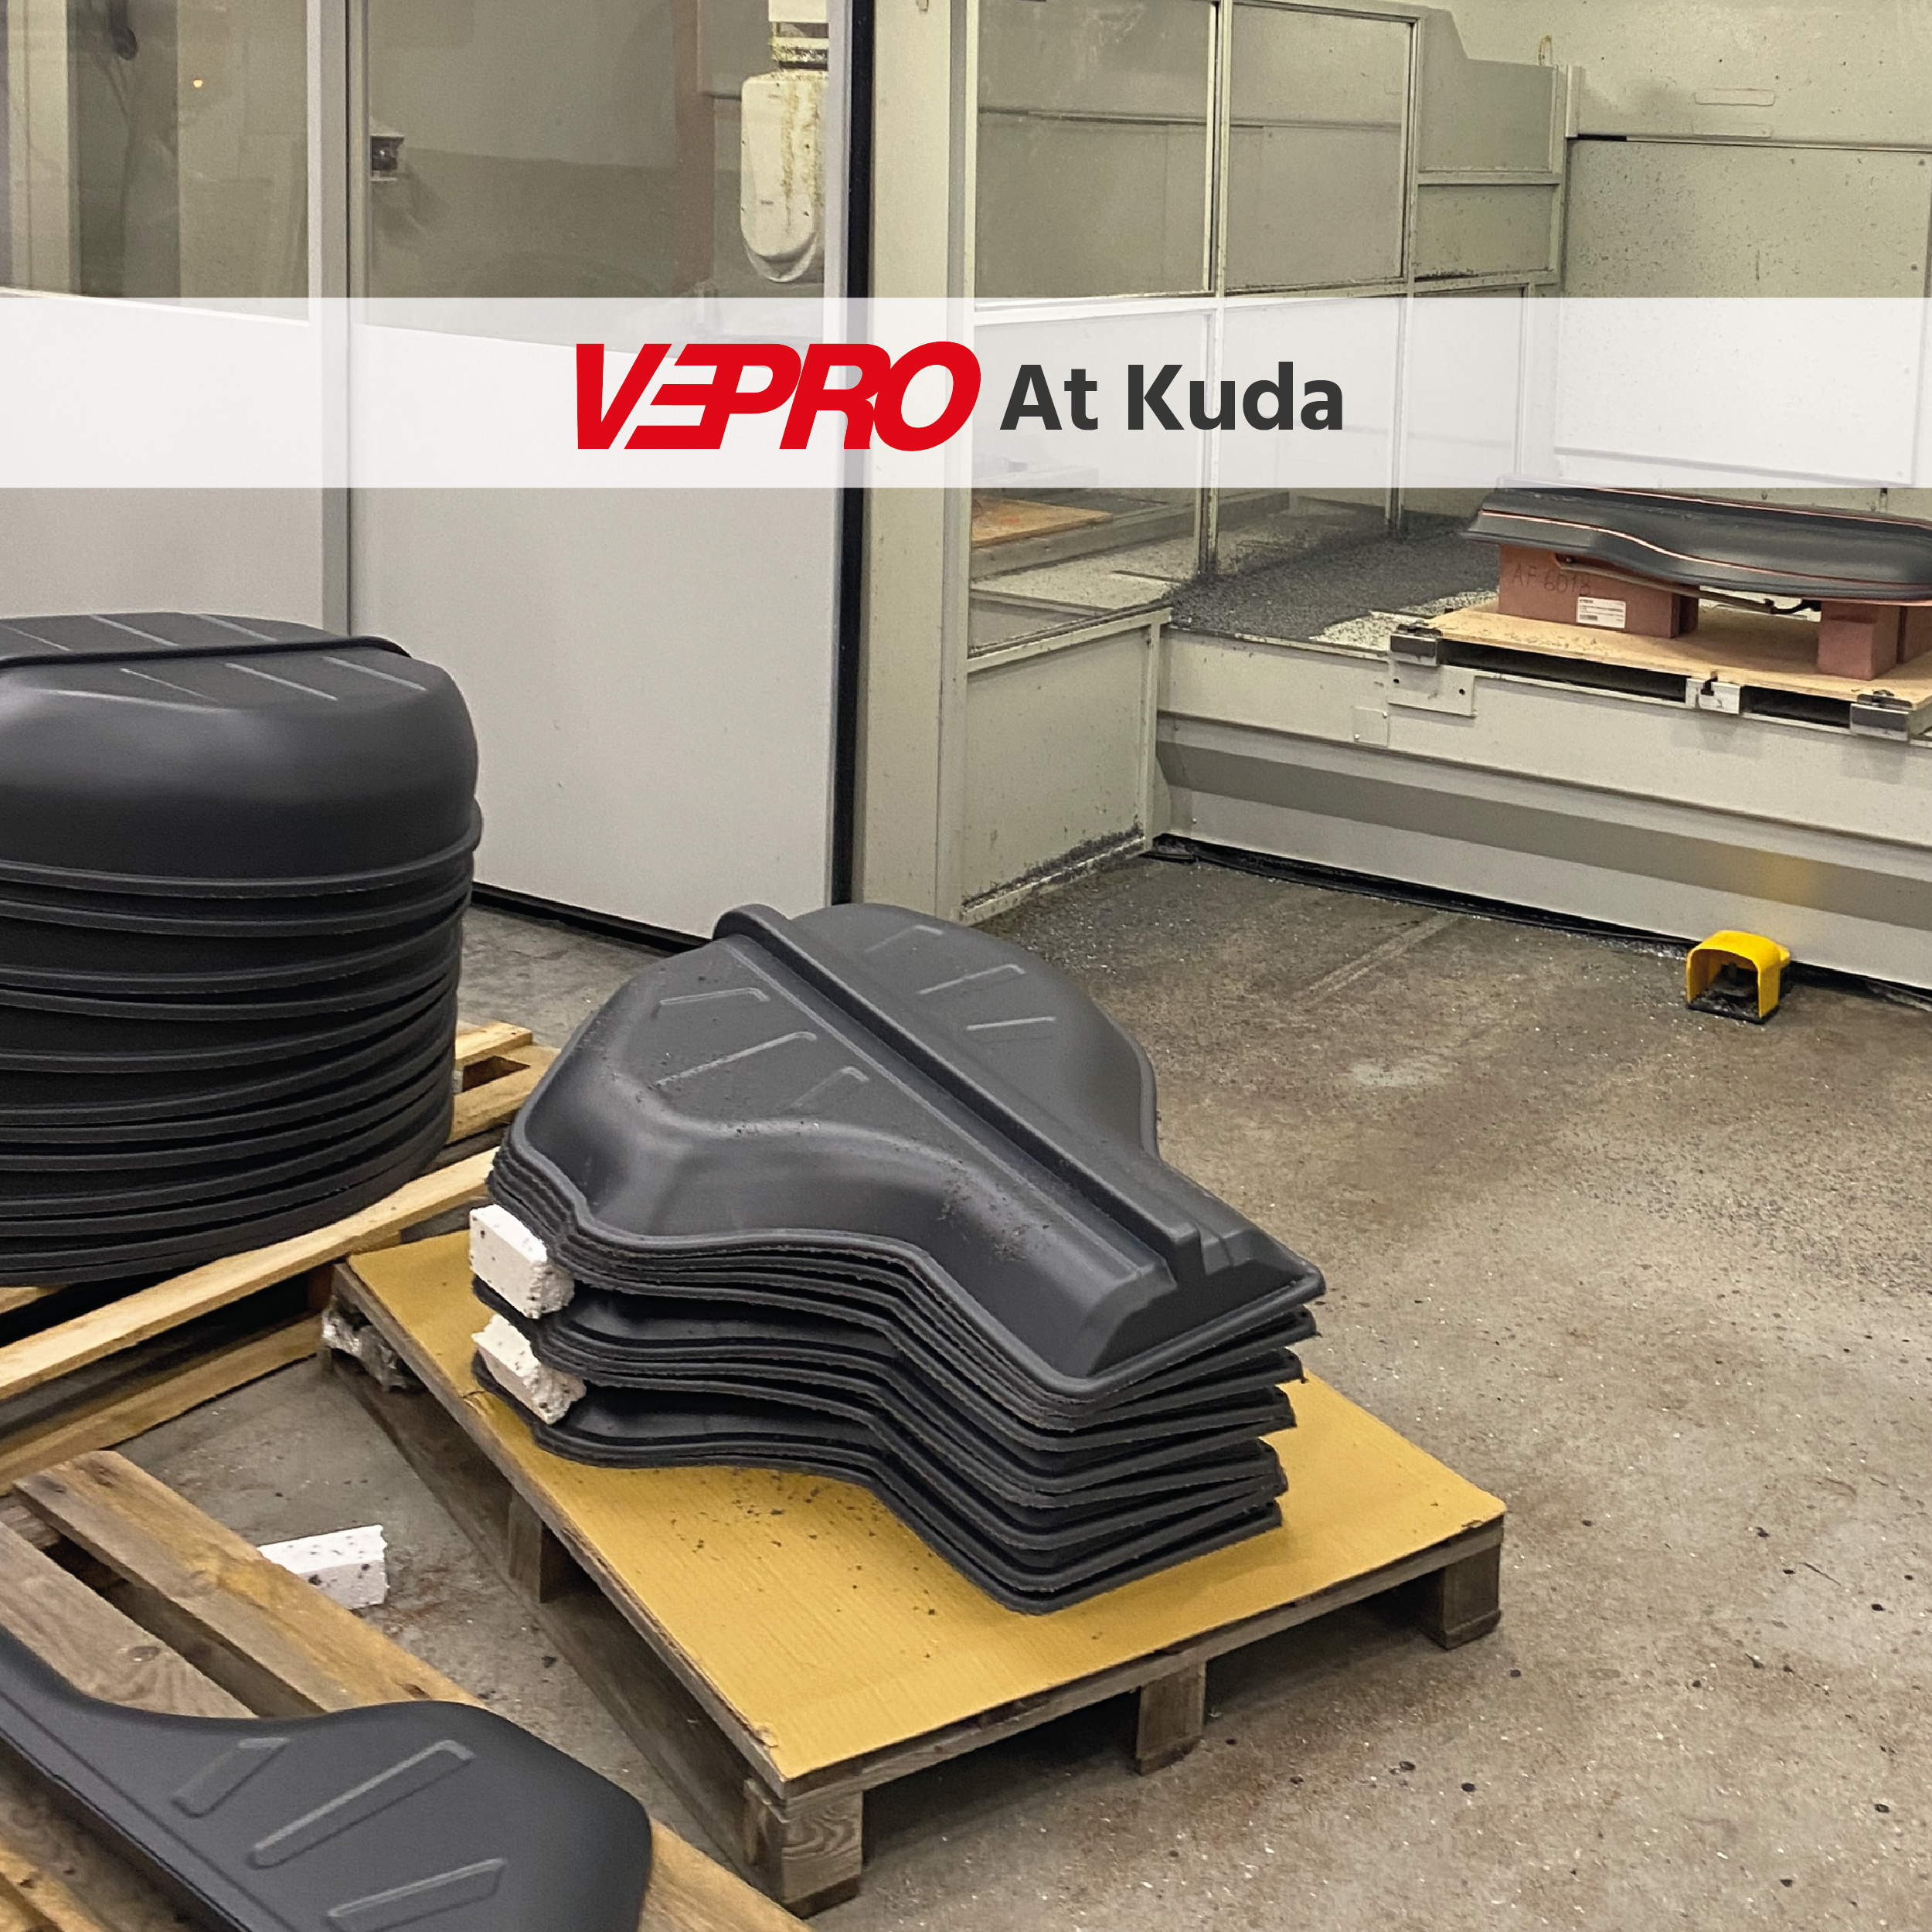 Image of Vepro at Kuda